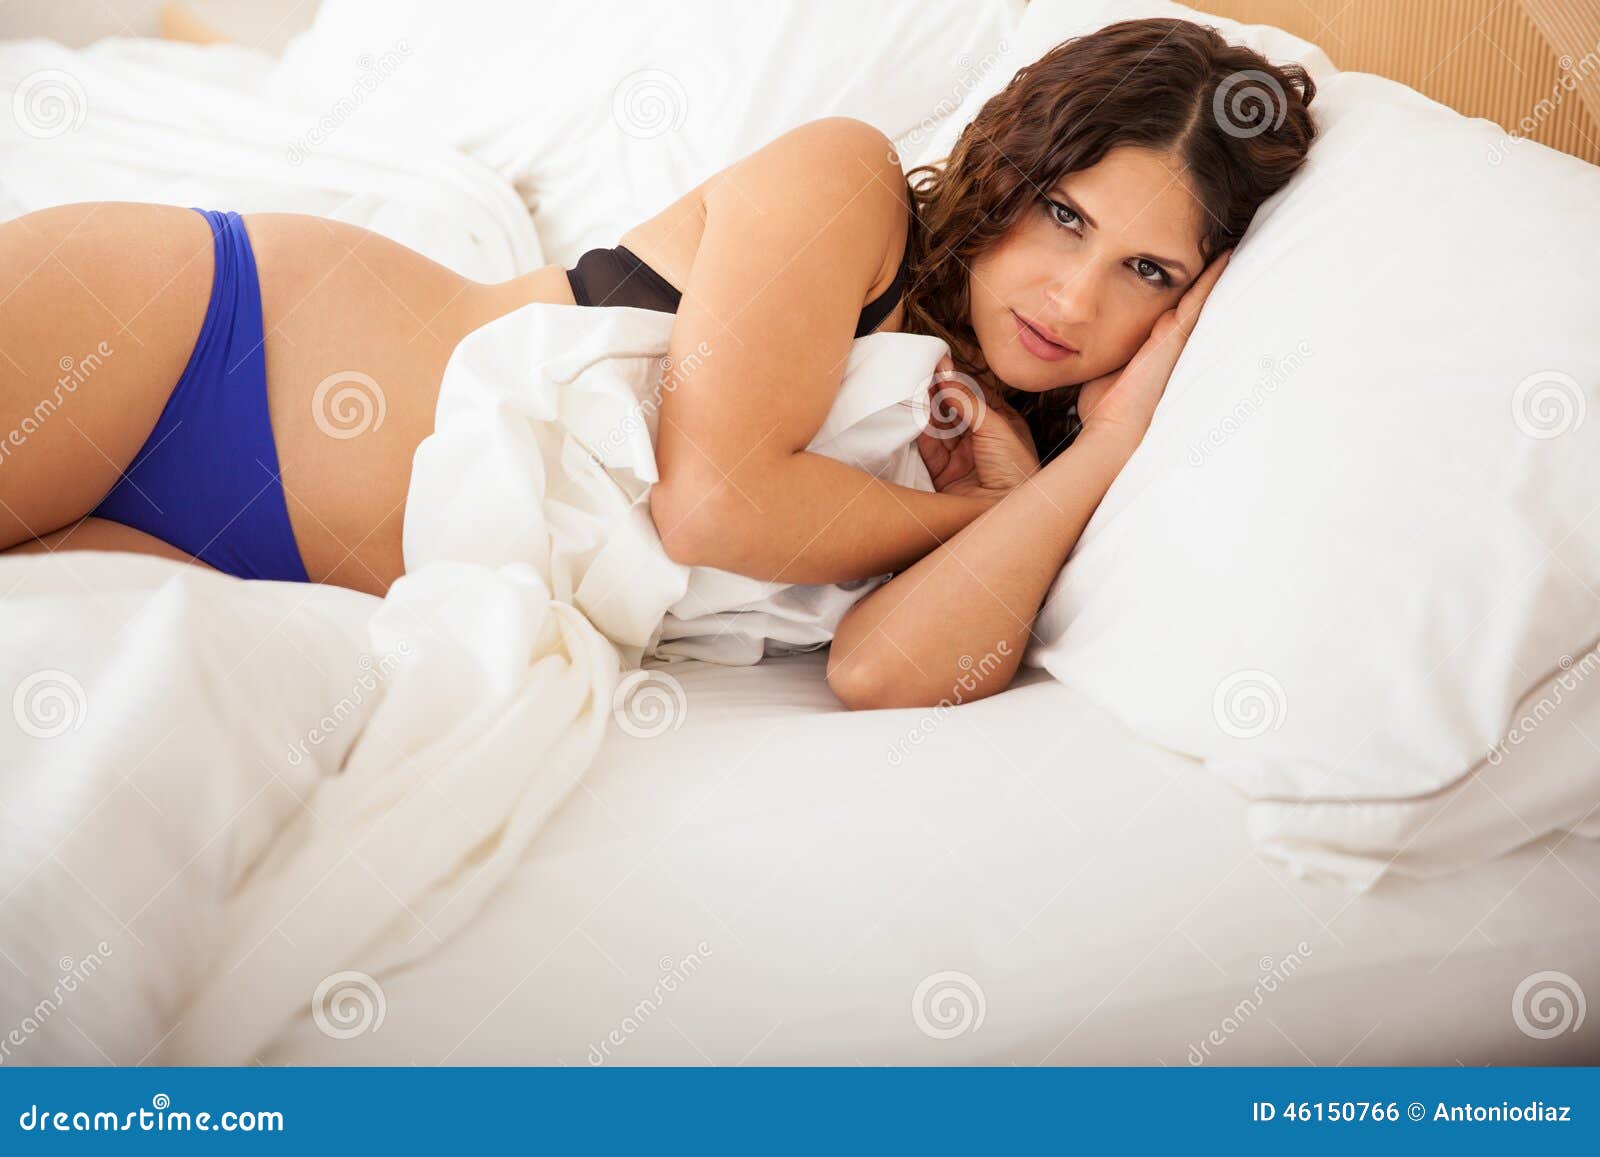 Girl In Bed With Panties Jpg